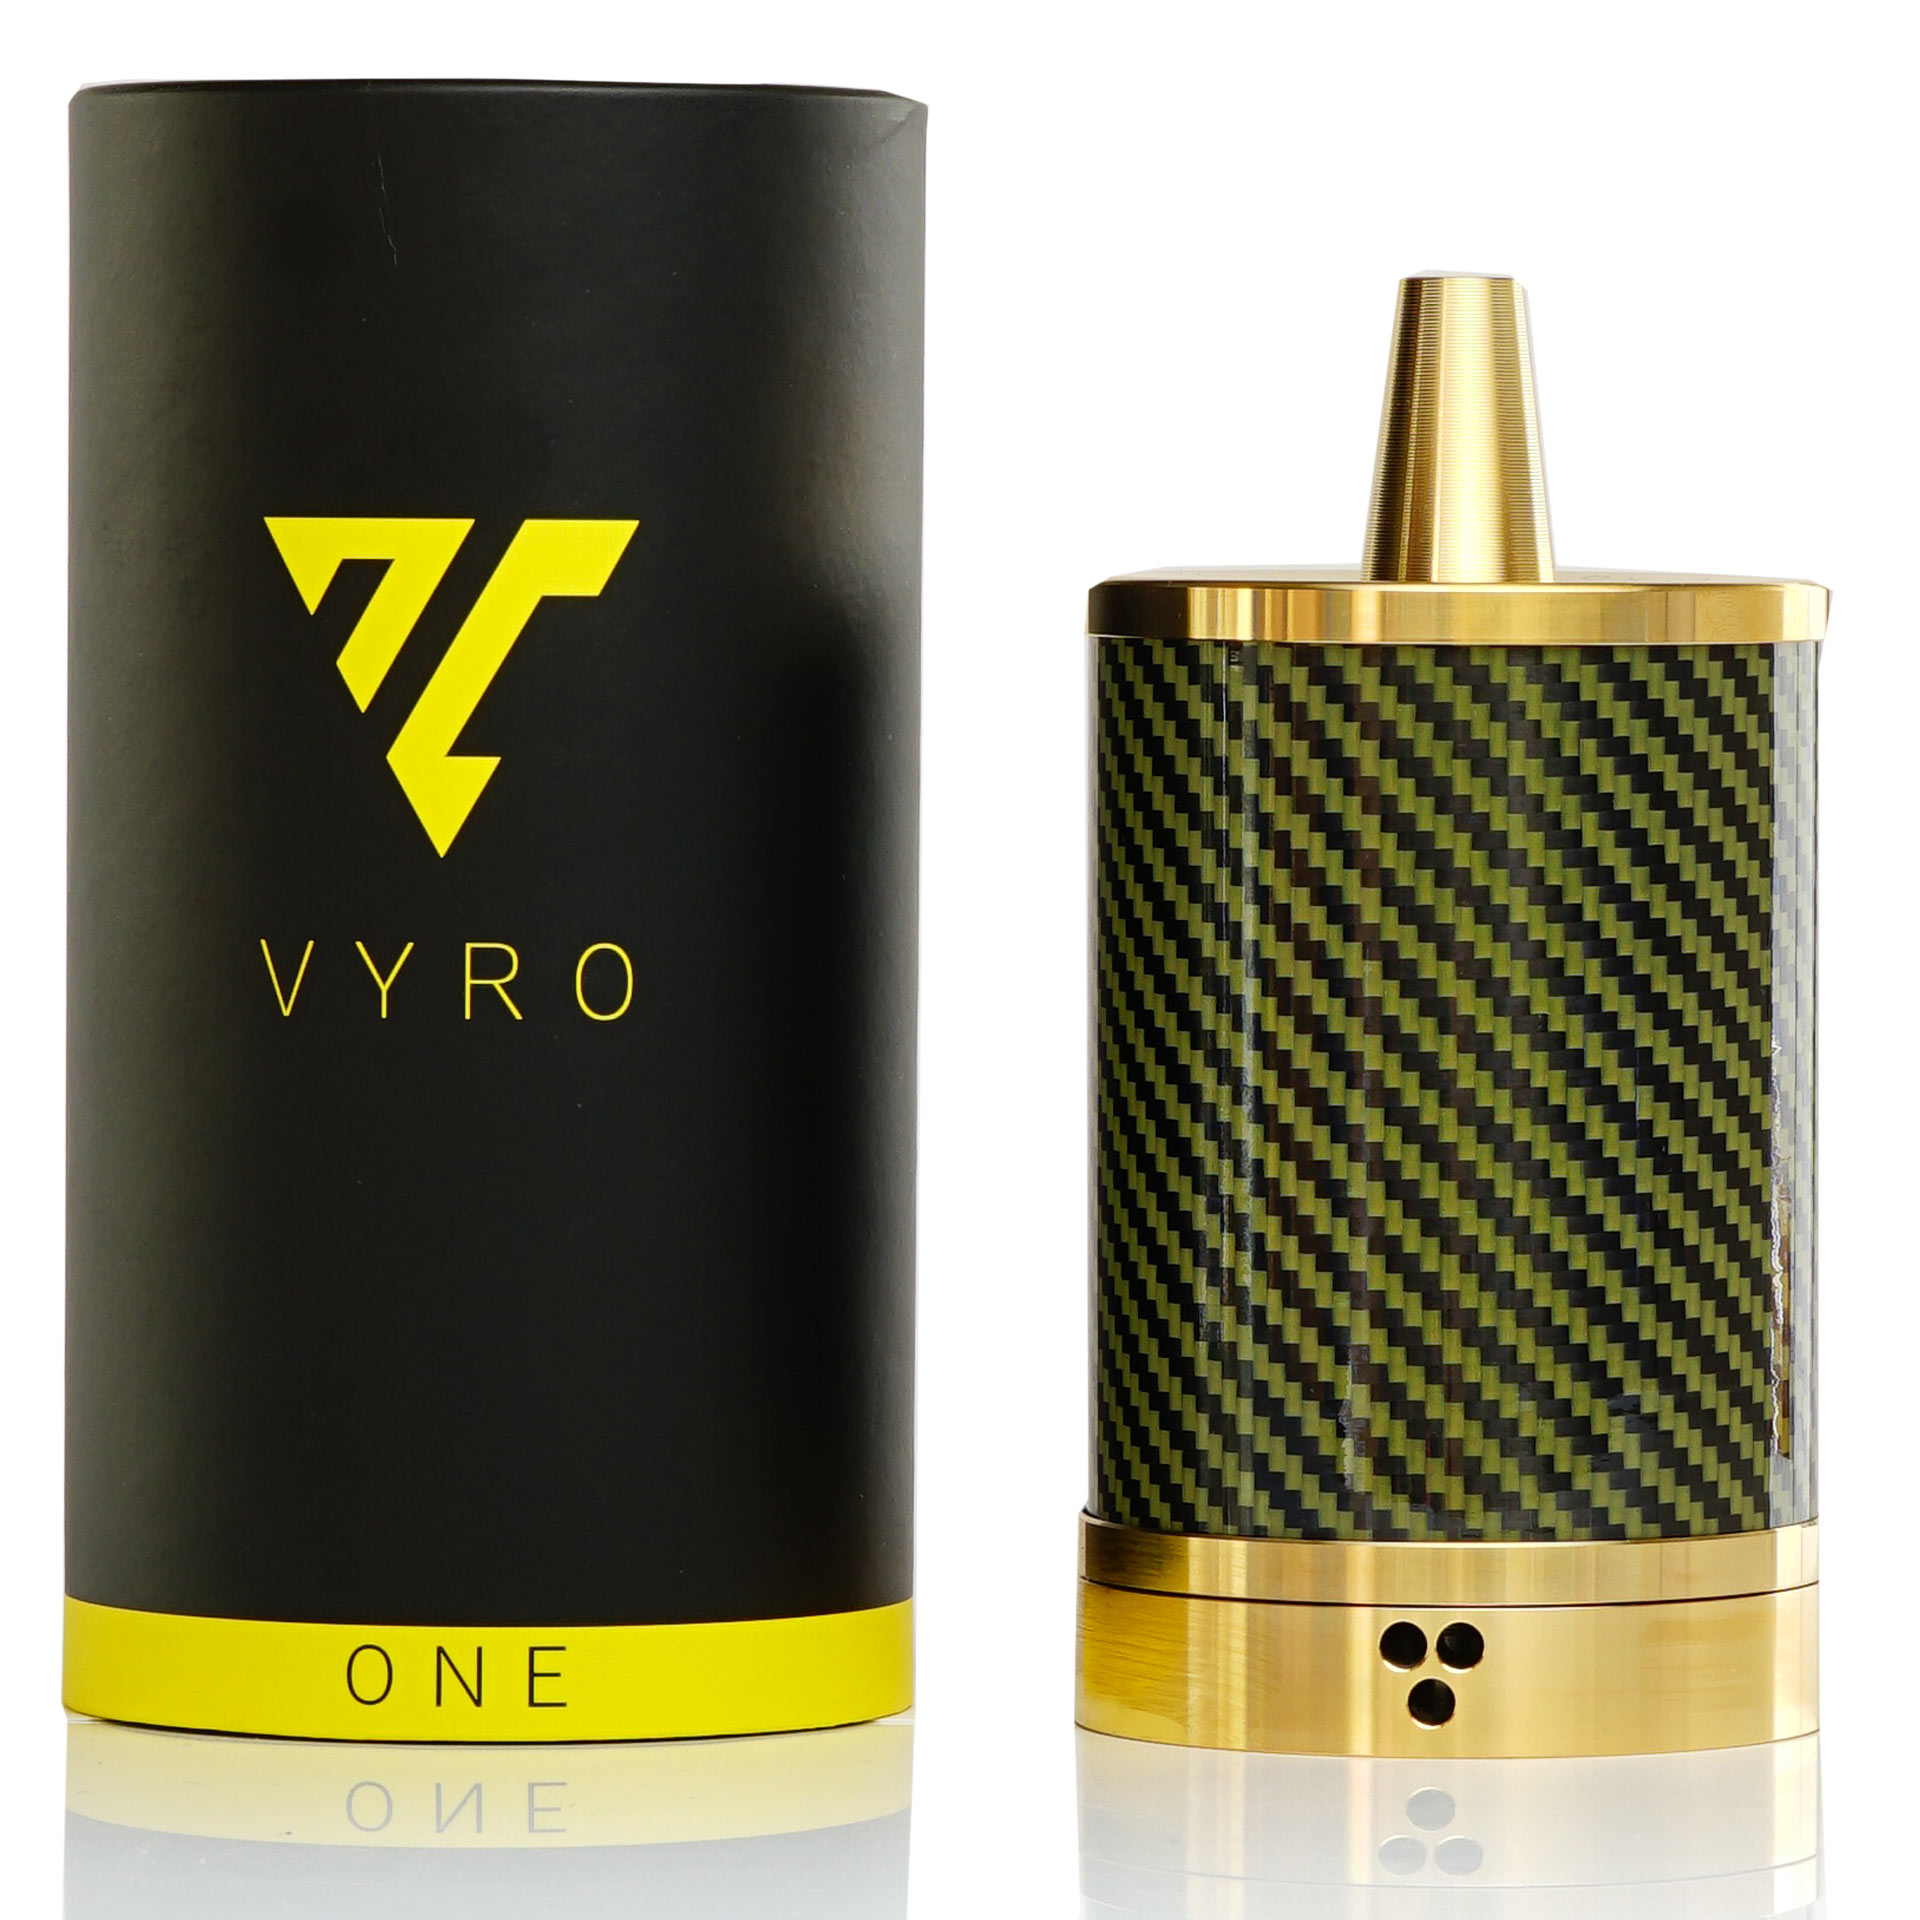 Vyro One / Volt / 24 Karat Gold